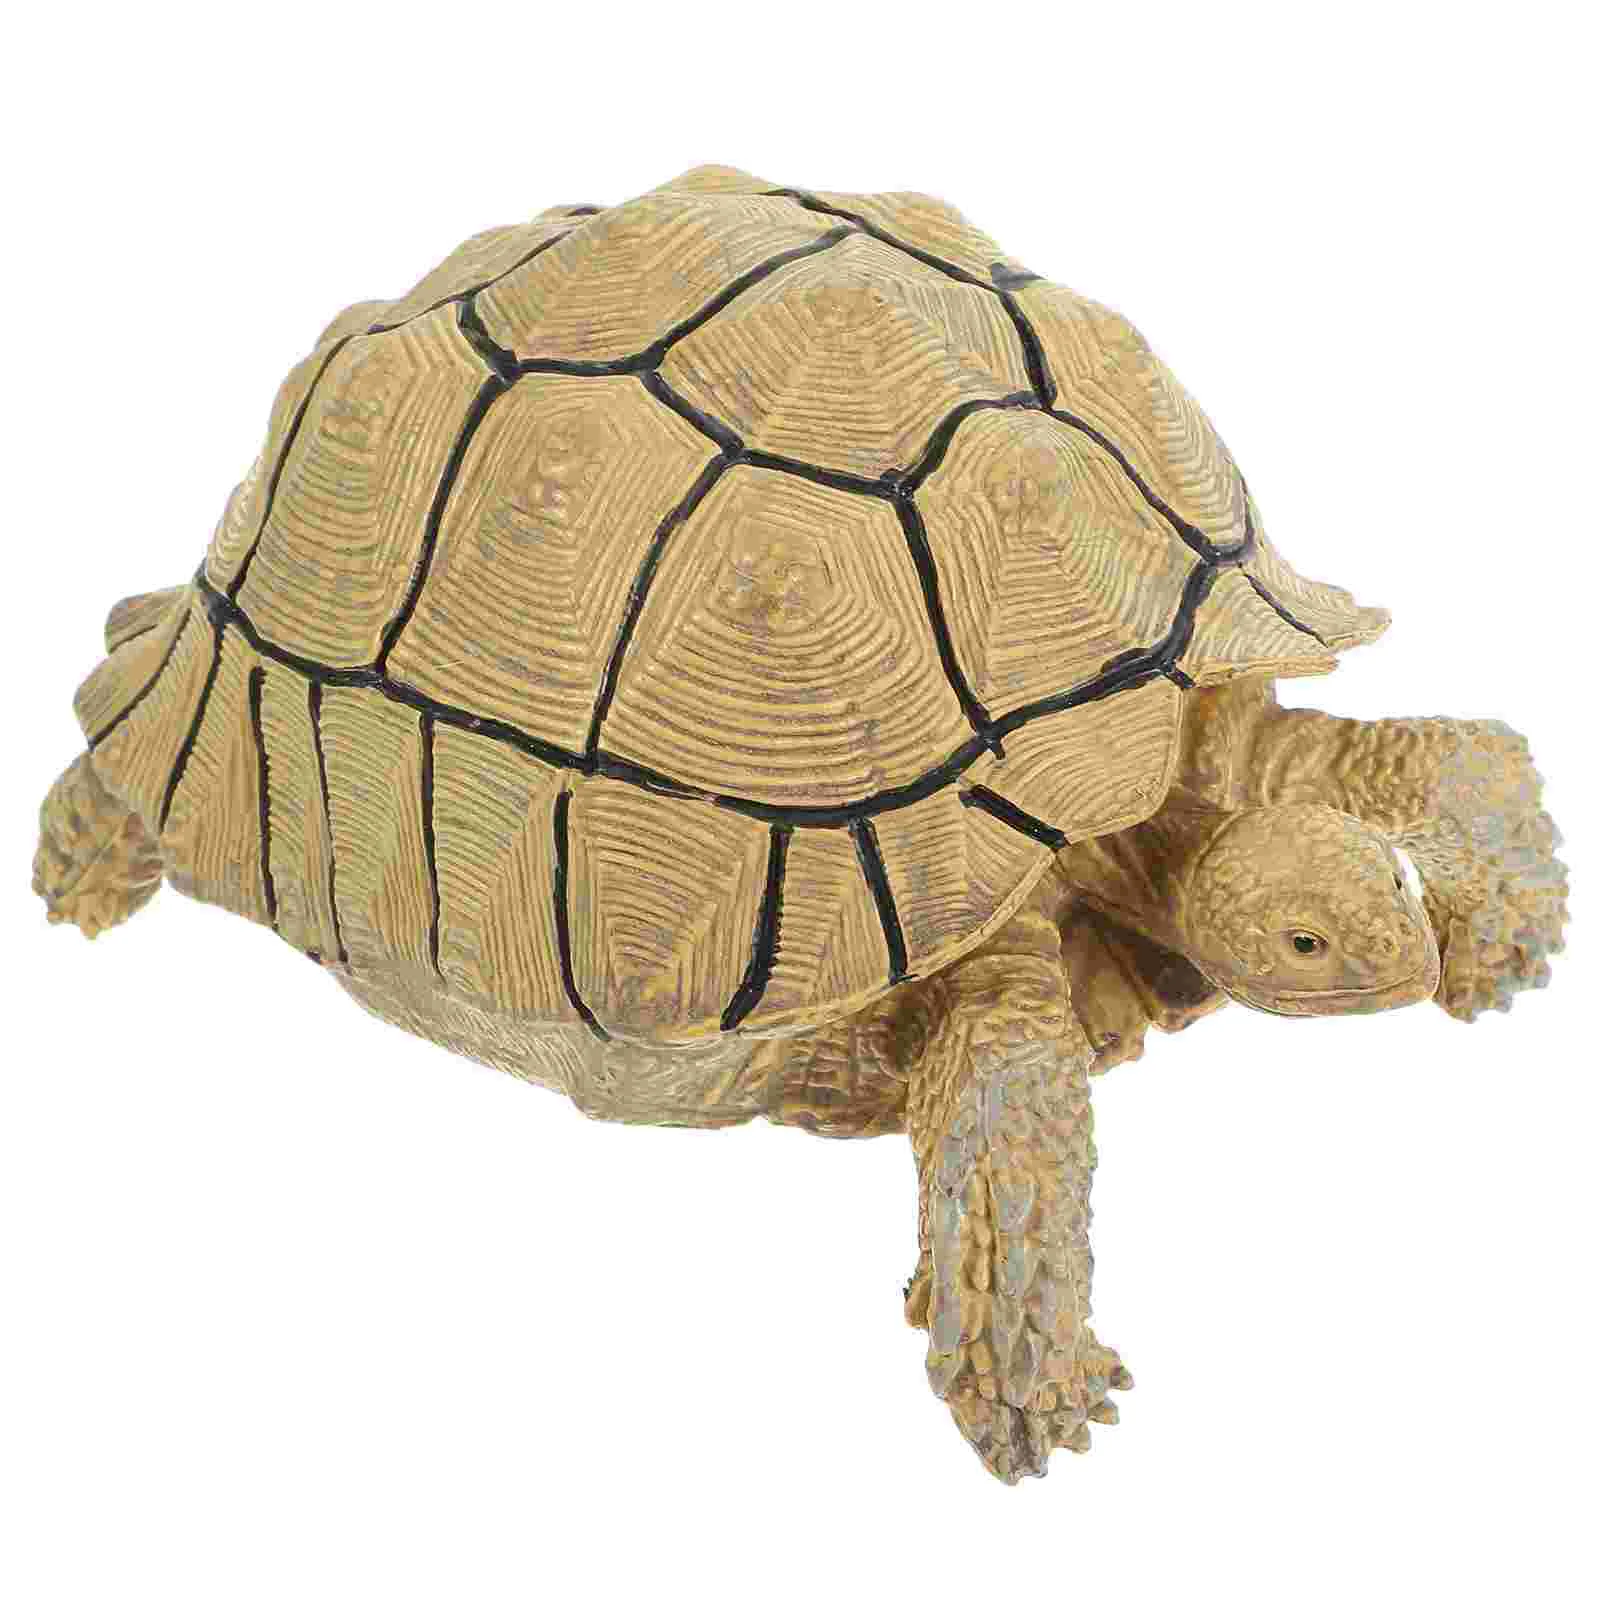 

Simulated Tortoise Toy Models Simulation Turtle Figure Figurine Decor Decoration Plastic Animal Child Figurines